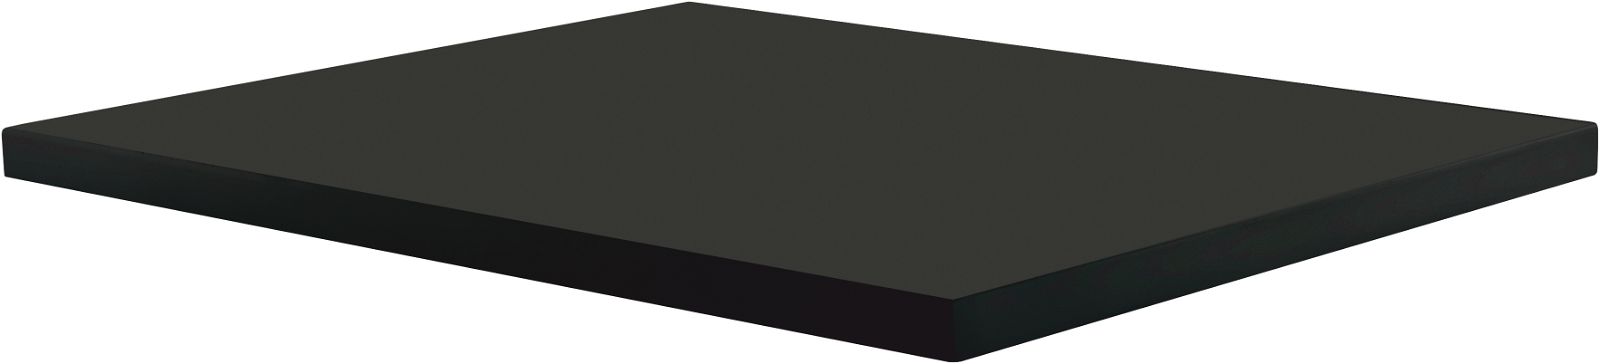 Półka kamienna do konsoli lub słupka - system modułowy - CBL_N30B - Główne zdjęcie produktowe